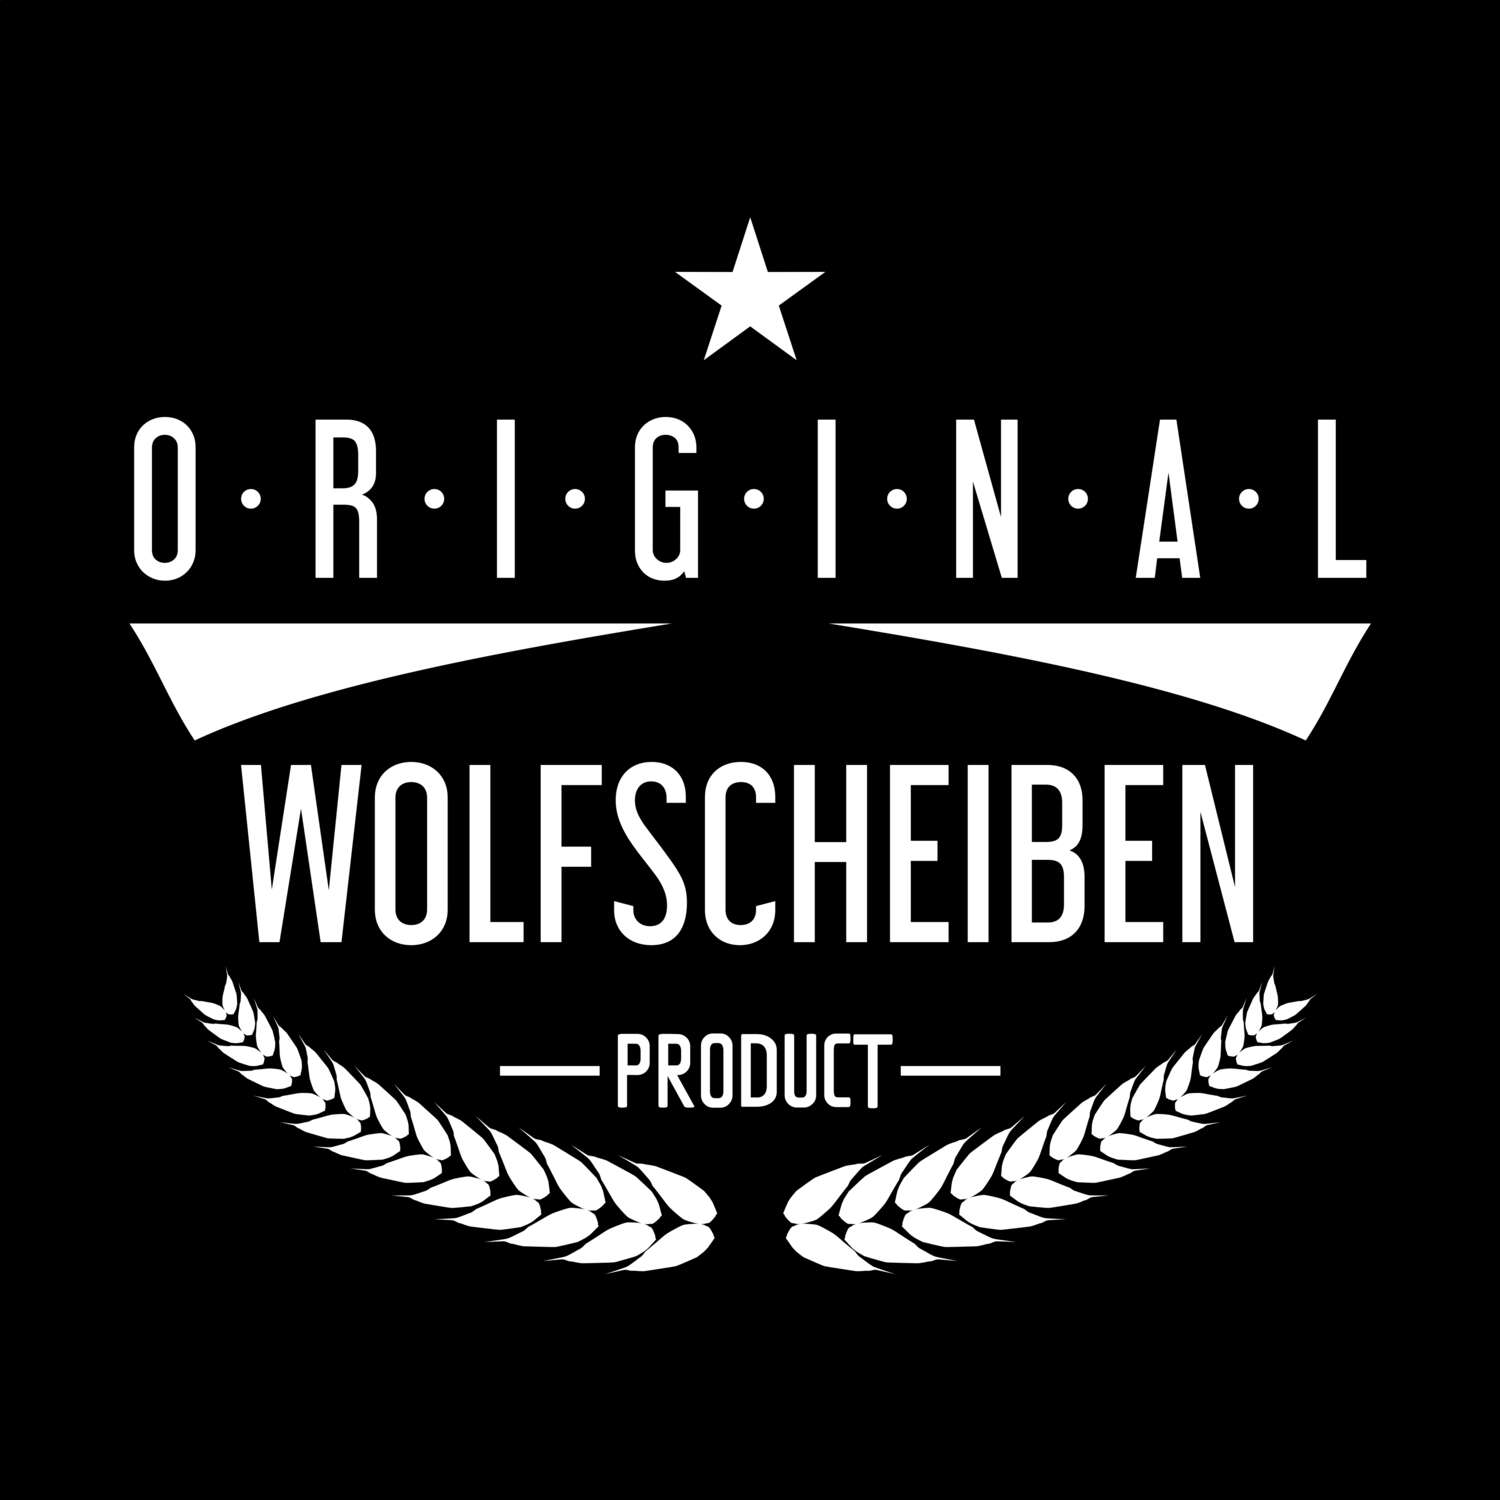 Wolfscheiben T-Shirt »Original Product«